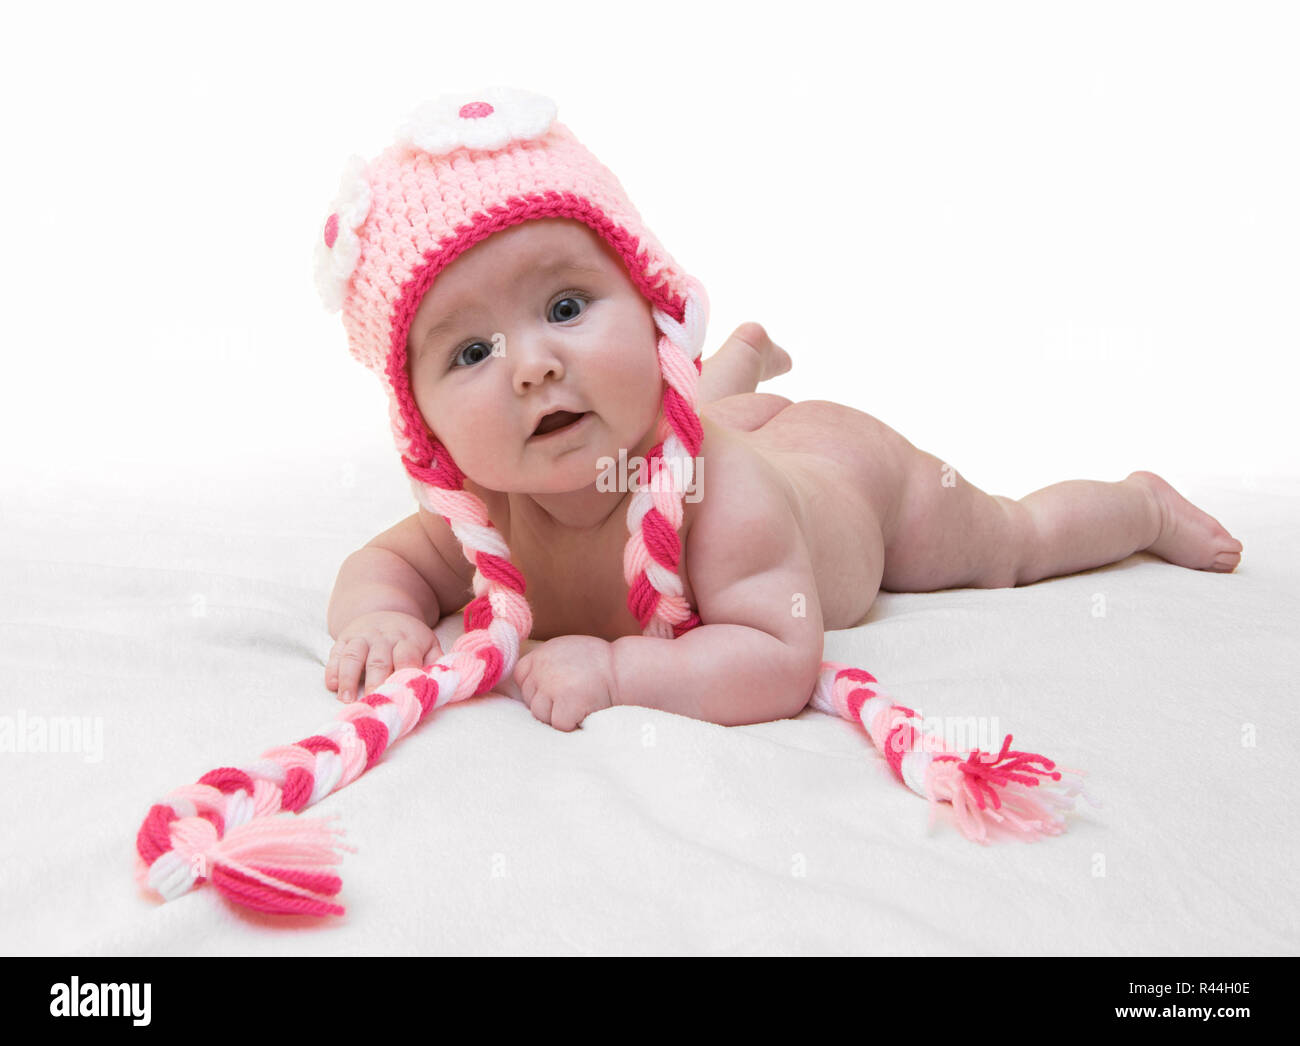 Funny femmina neonata con bella maglia rosa cappuccio su sfondo bianco.  Happy Baby girl con una bella maglia cappuccio colorato su coltre bianca.  Usura del neonato Foto stock - Alamy